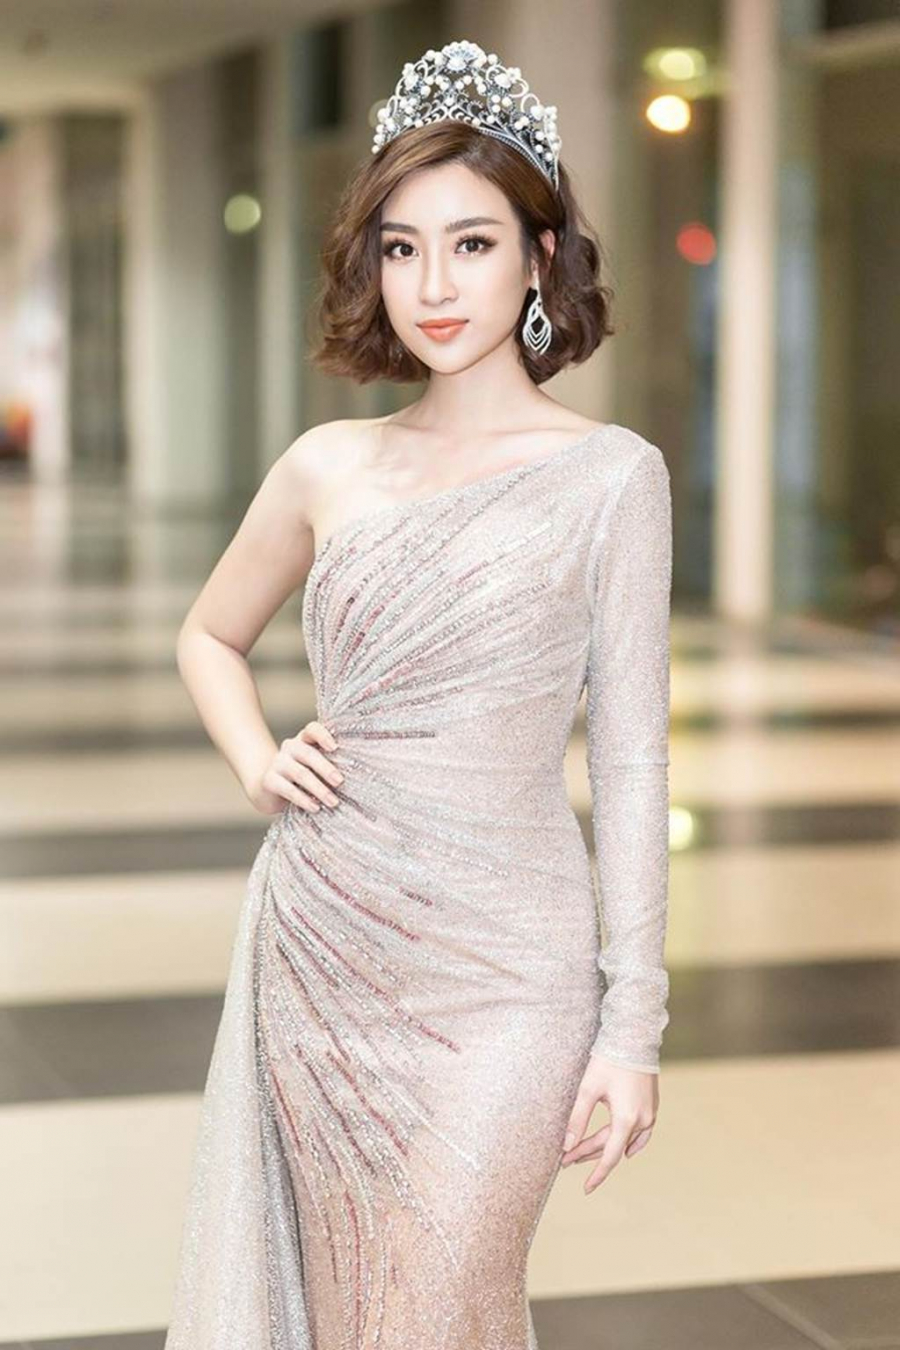 Trong suốt nhiệm kỳ 2 năm hoạt động với vai trò Hoa hậu Việt Nam 2016, người đẹp Hà thành Đỗ Mỹ Linh đã dành được nhiều cảm tình của đồng nghiệp và công chúng bởi đời tư không scandal cũng như những cống hiến tích cực của mình về hoạt động xã hội.    